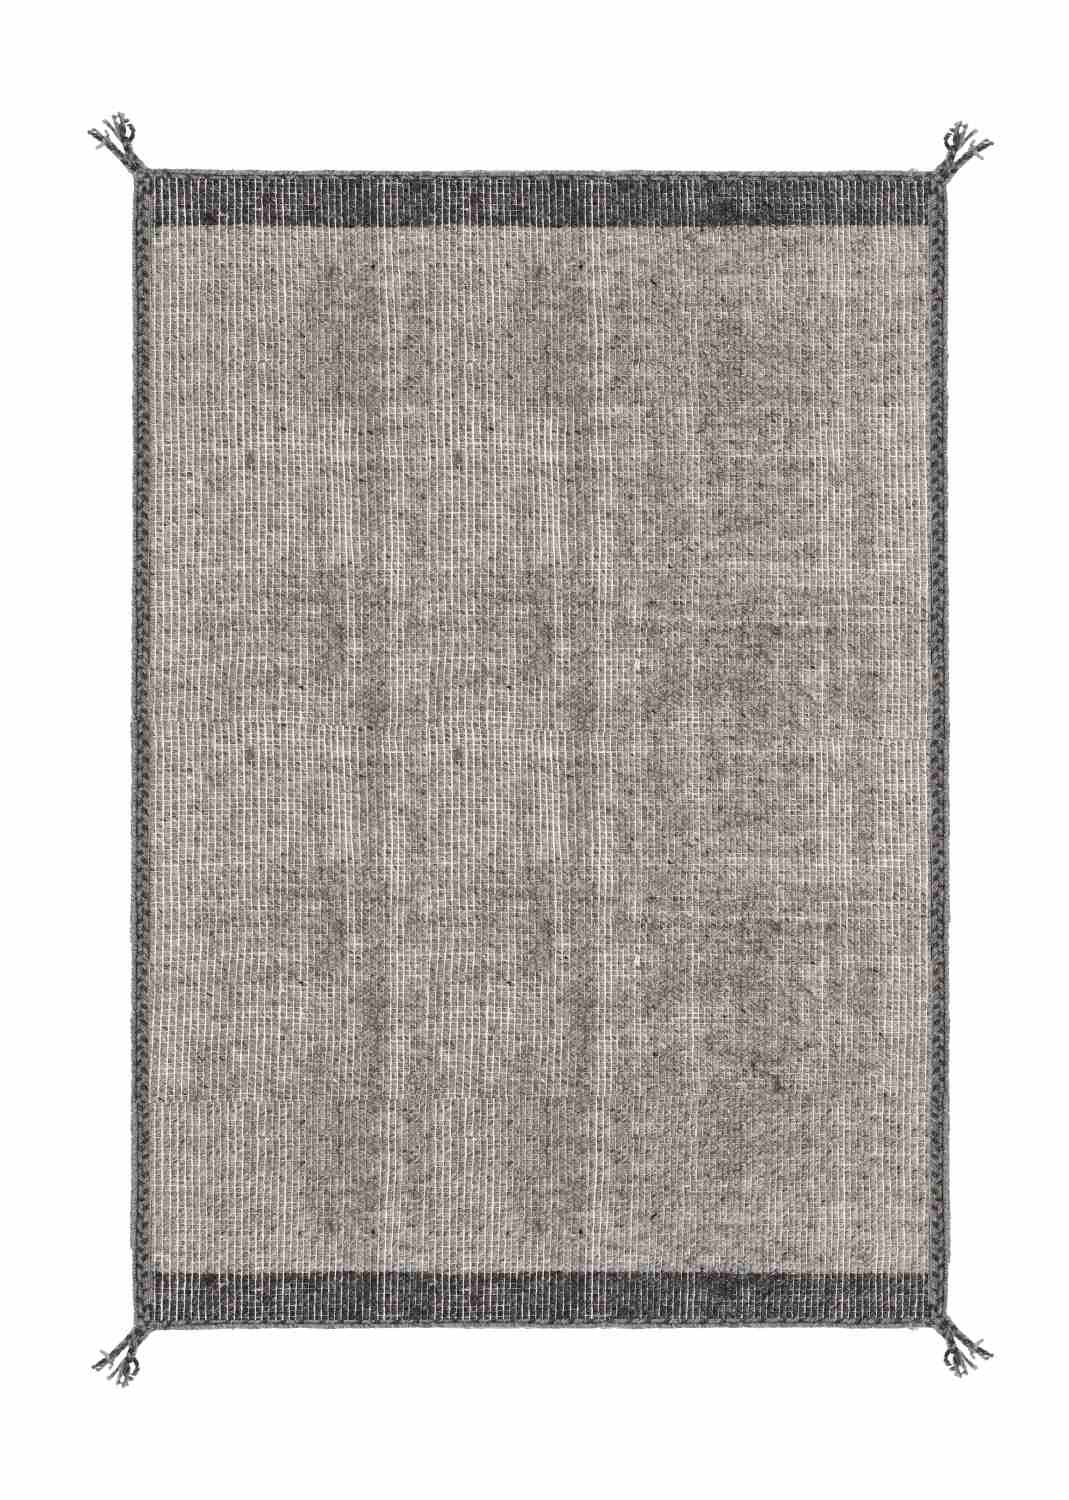 Der Teppich Chathu überzeugt mit seinem modernen Design. Gefertigt wurde die Vorderseite aus Wolle und die Rückseite aus Baumwolle. Der Teppich besitzt eine grauen Farbton und die Maße von 200x300 cm.